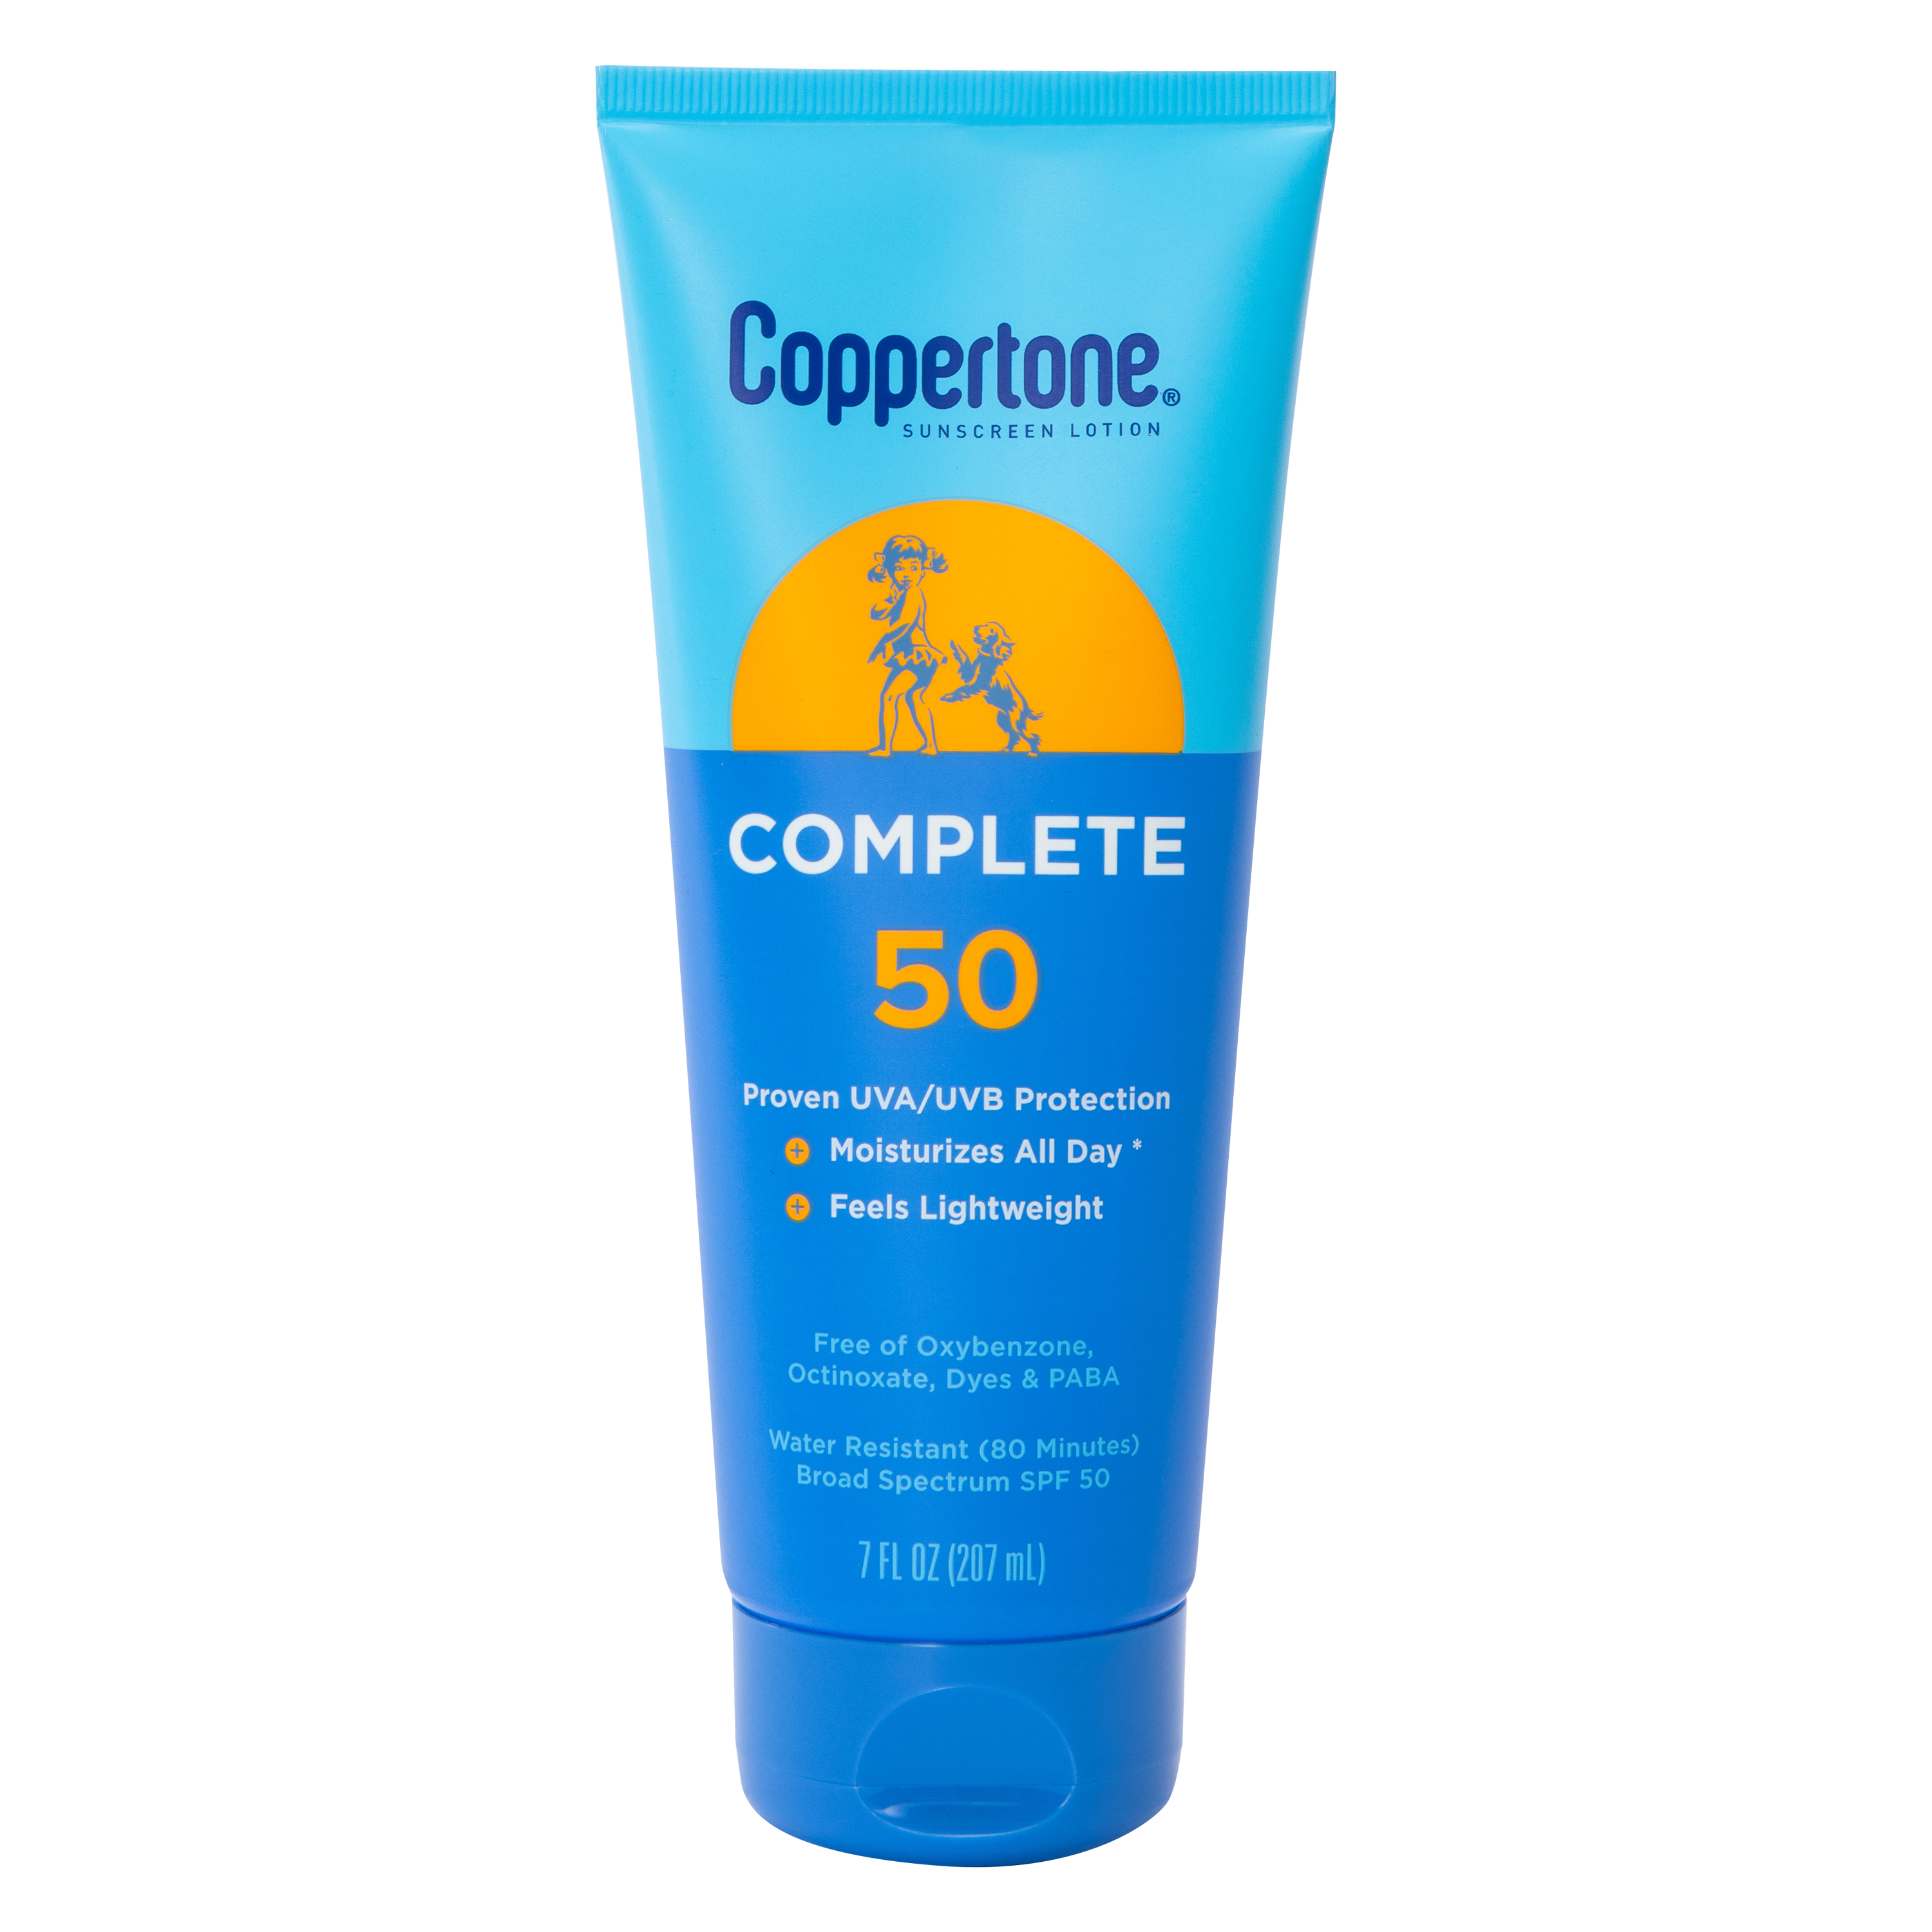 Coppertone® Complete SPF 50 Sunscreen Lotion 7oz